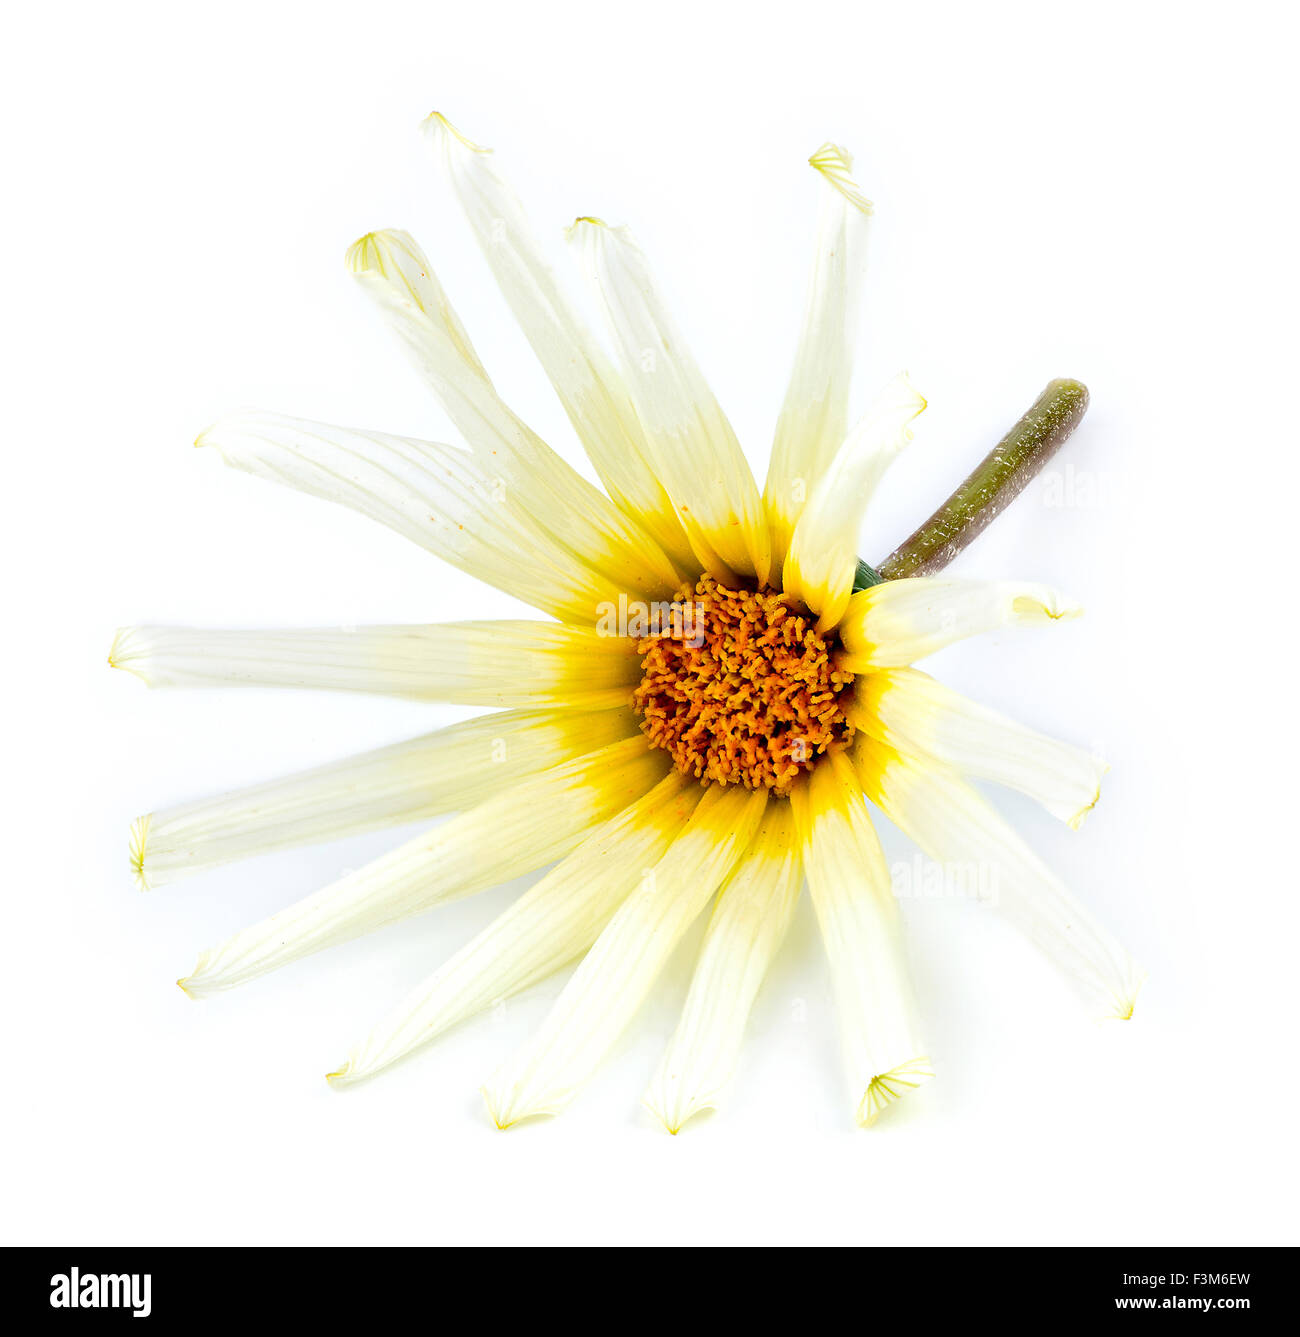 Faccia anteriore macro delle asteraceae daisy flower contro uno sfondo bianco Foto Stock